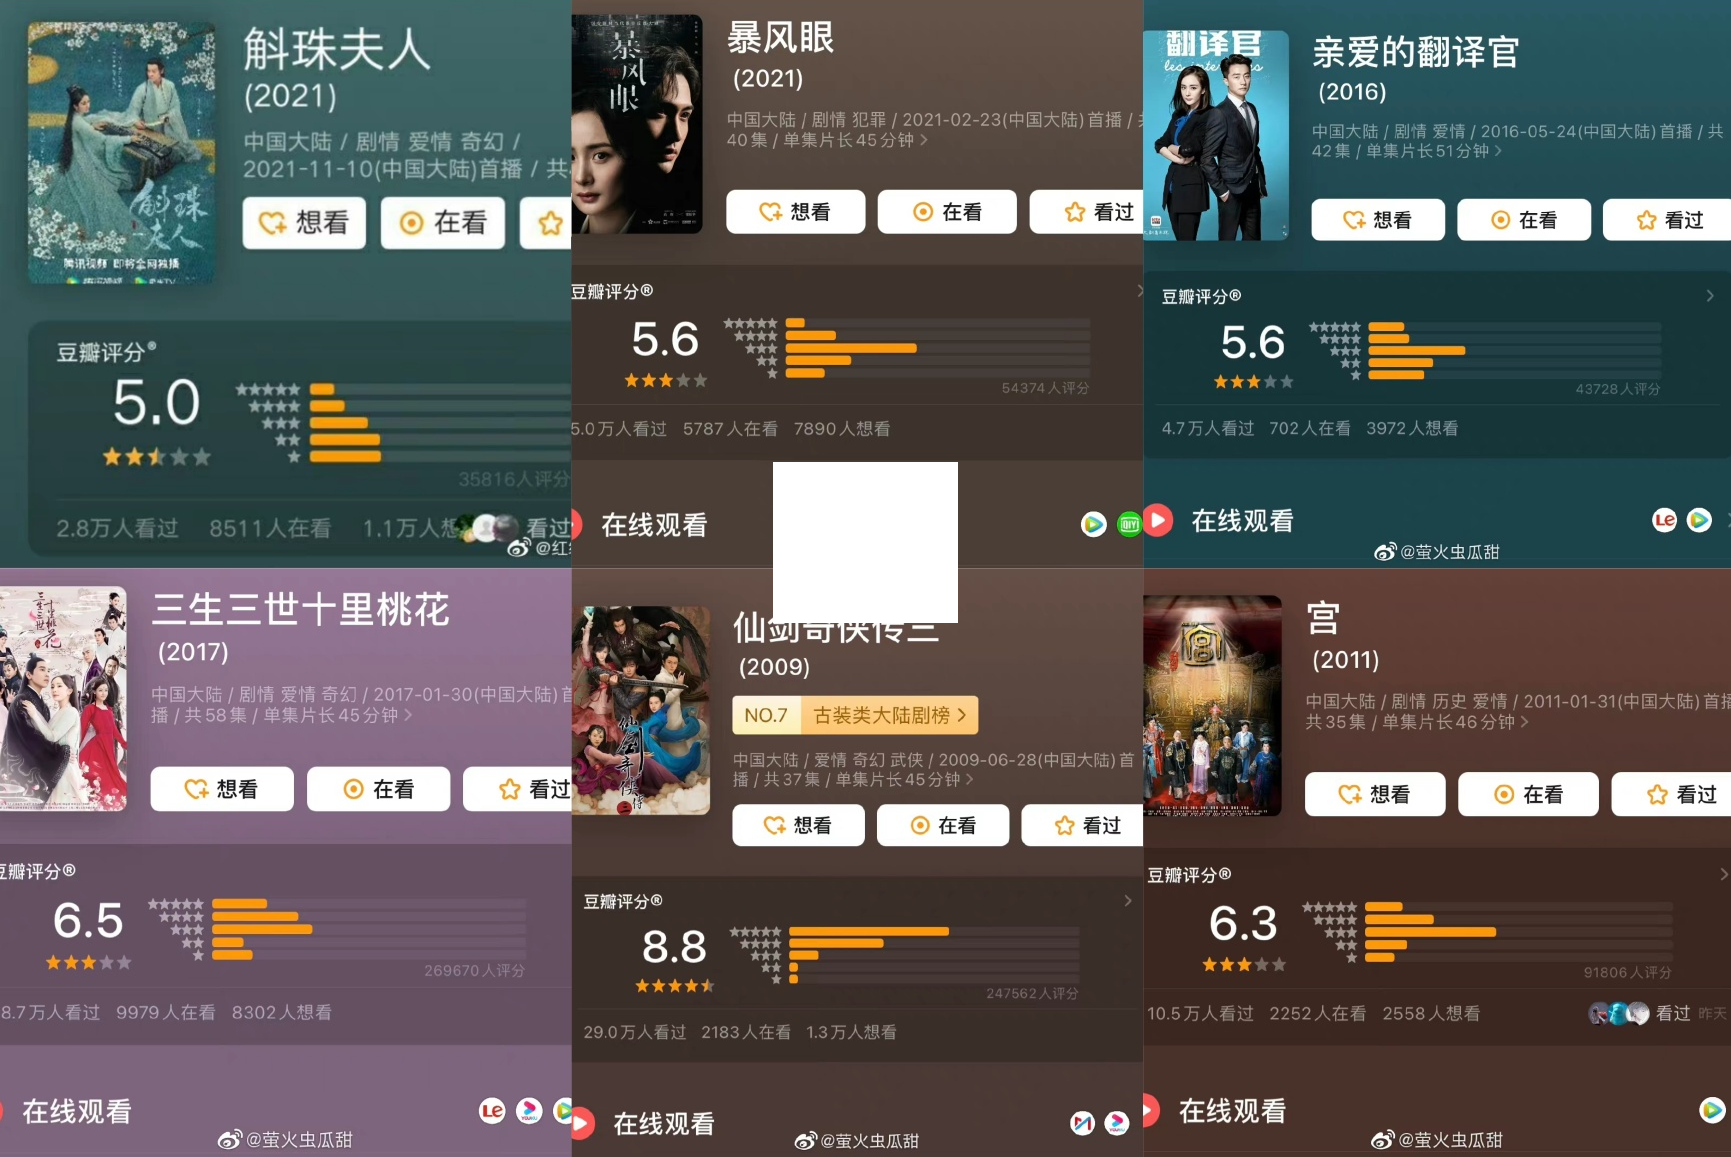 Danh tiếng dư thừa, nhưng điểm Douban các bộ phim của Dương Mịch lại 'trồi sụt' lạ lùng, xem thống kê mà choáng váng 7